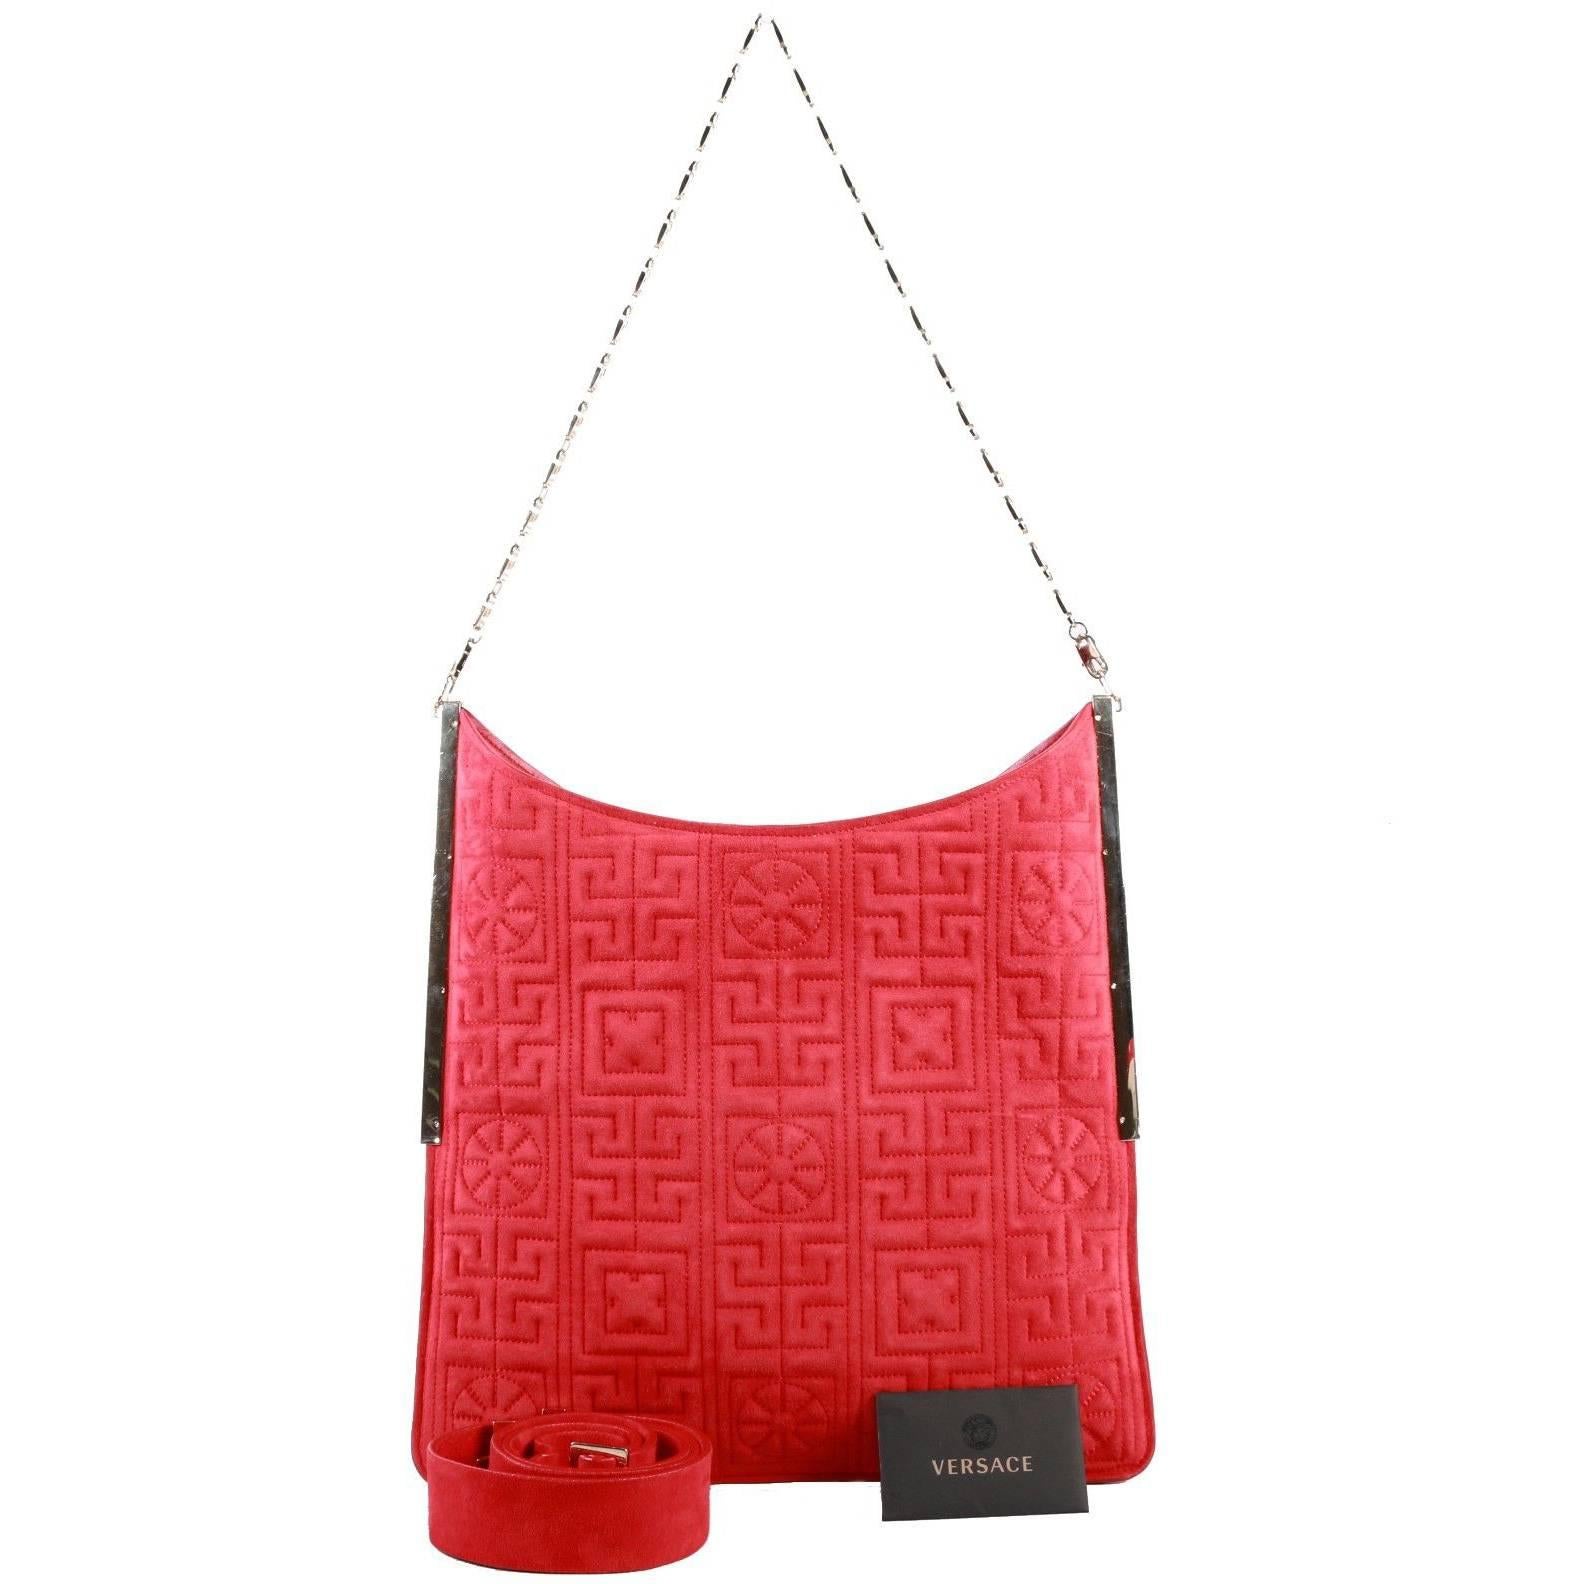 Versace #GREEK red suede leather shoulder bag